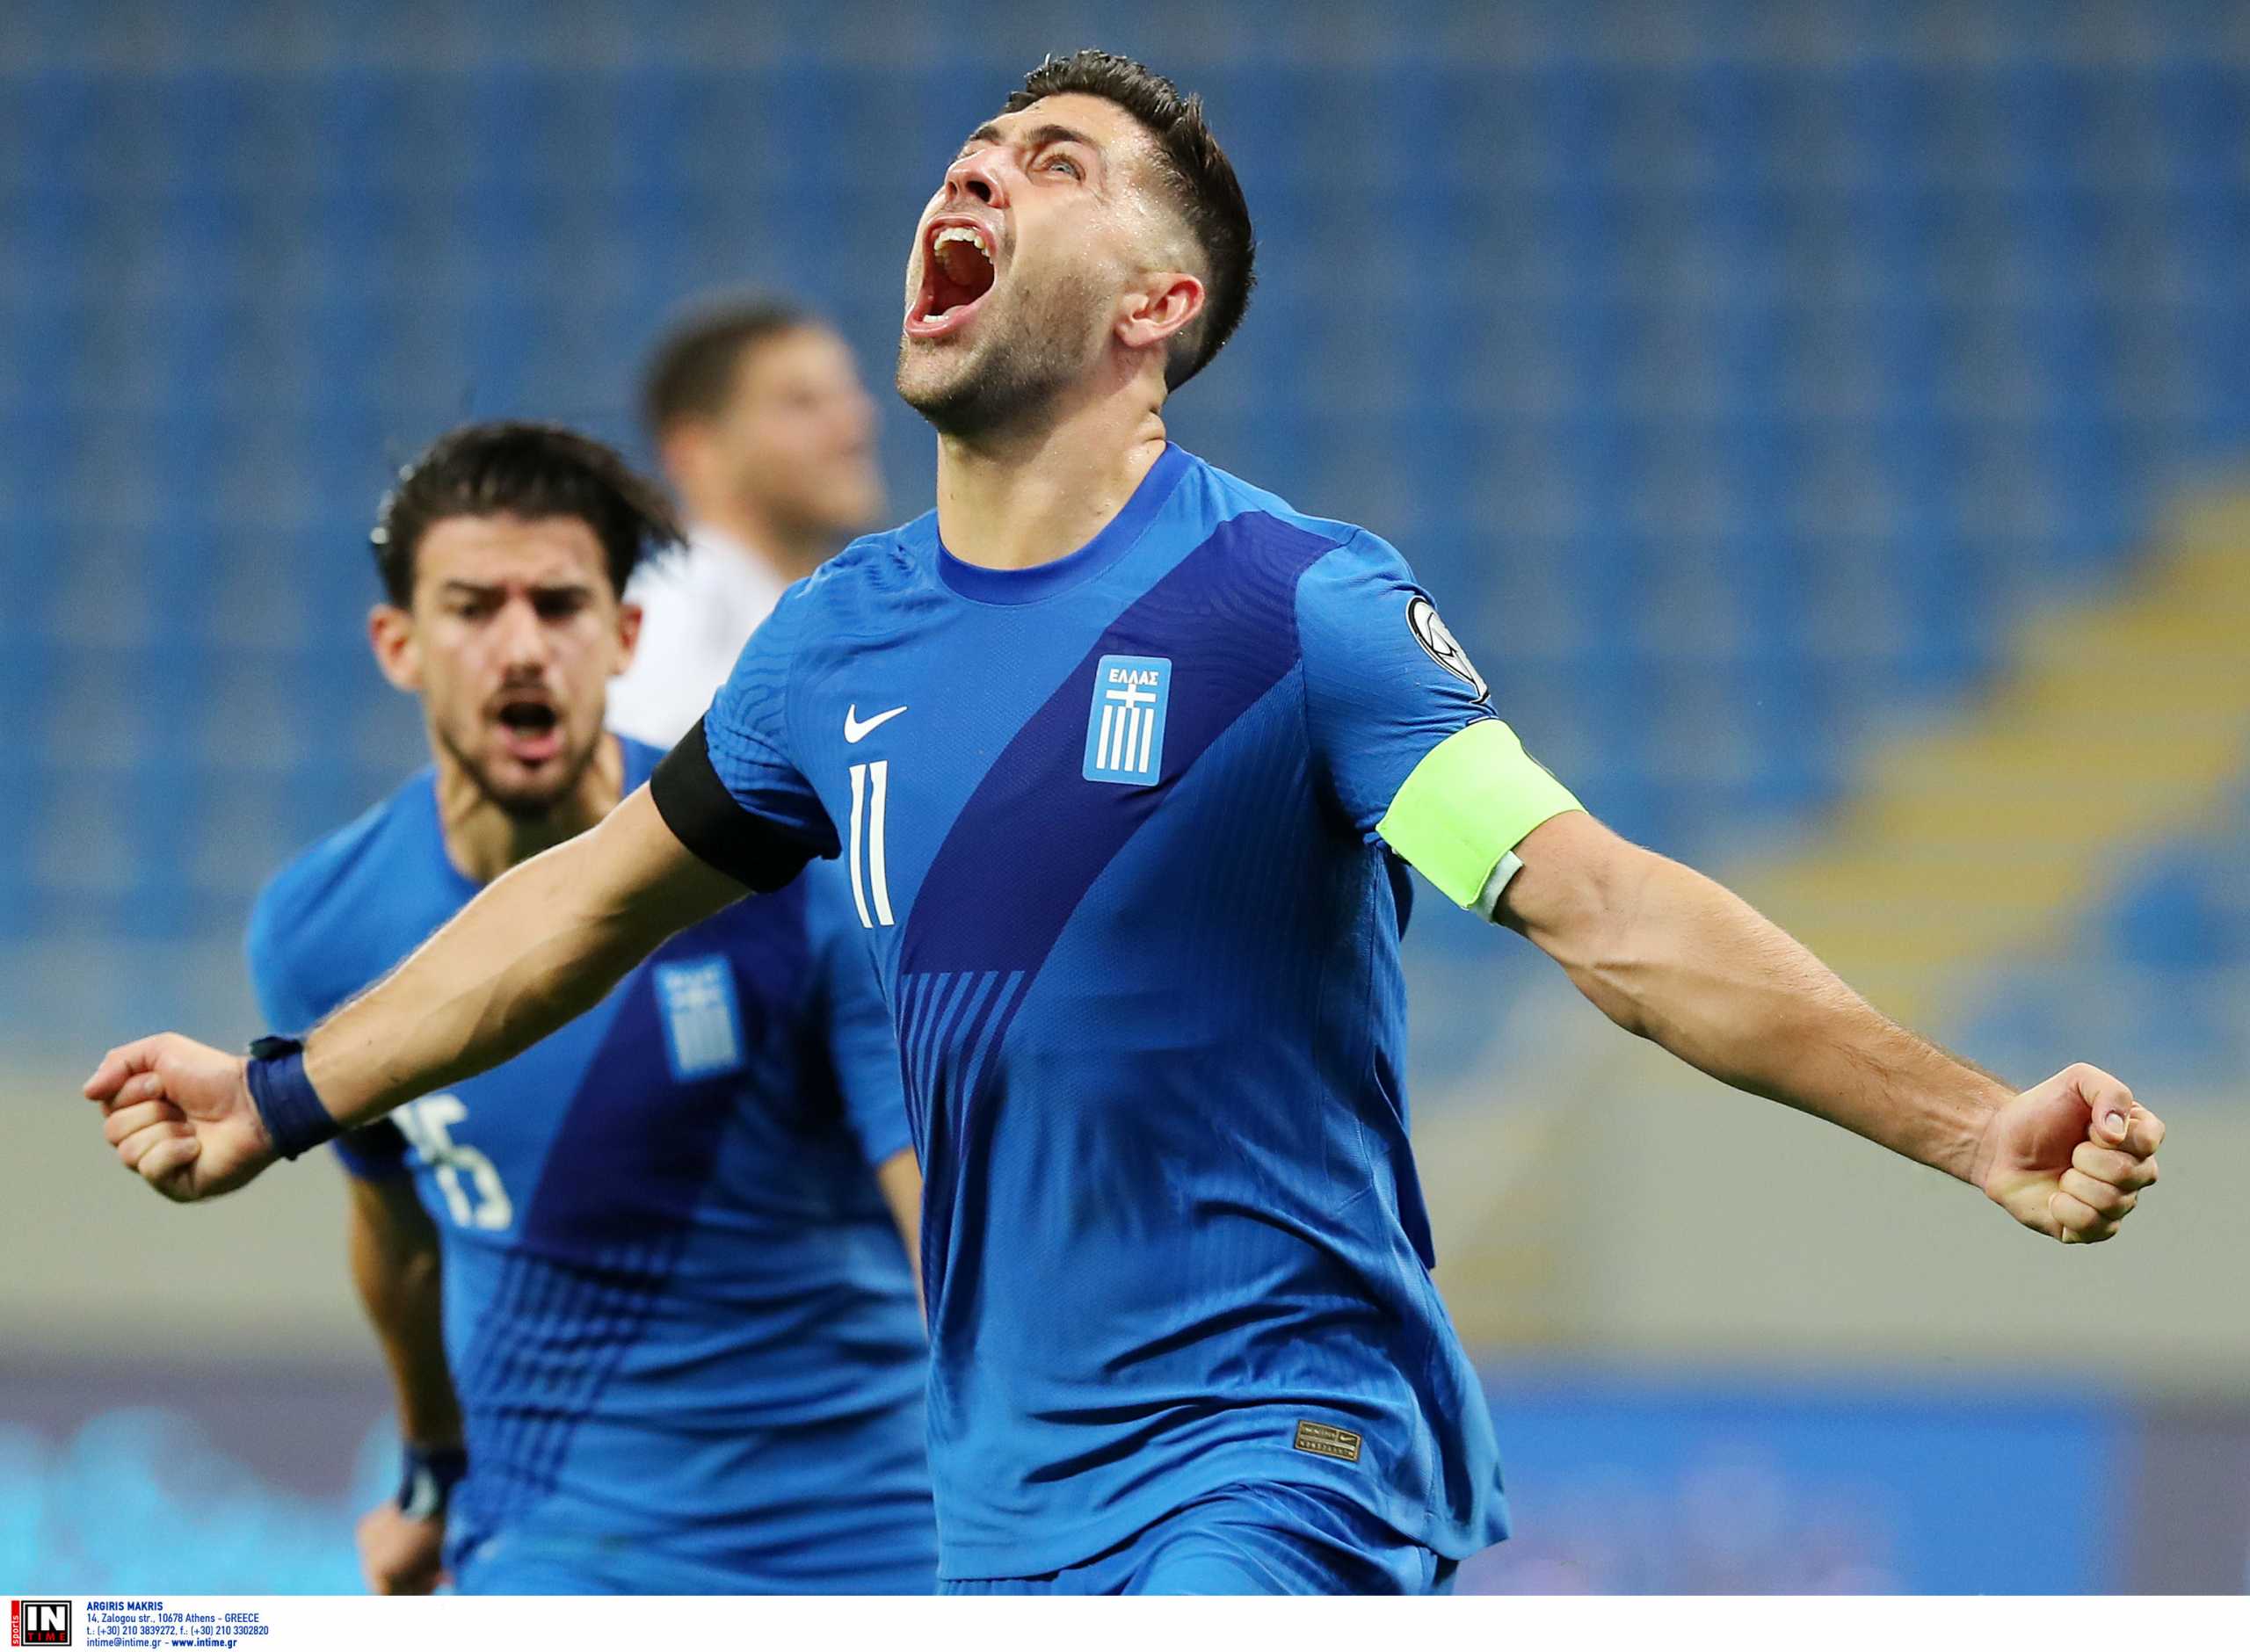 Προκριματικά Μουντιάλ 2022, Εθνική Ελλάδας: Το πιο σημαντικό πέναλτι στην καριέρα του Μπακασέτα και η αποθέωση από τα τουρκικά Μέσα